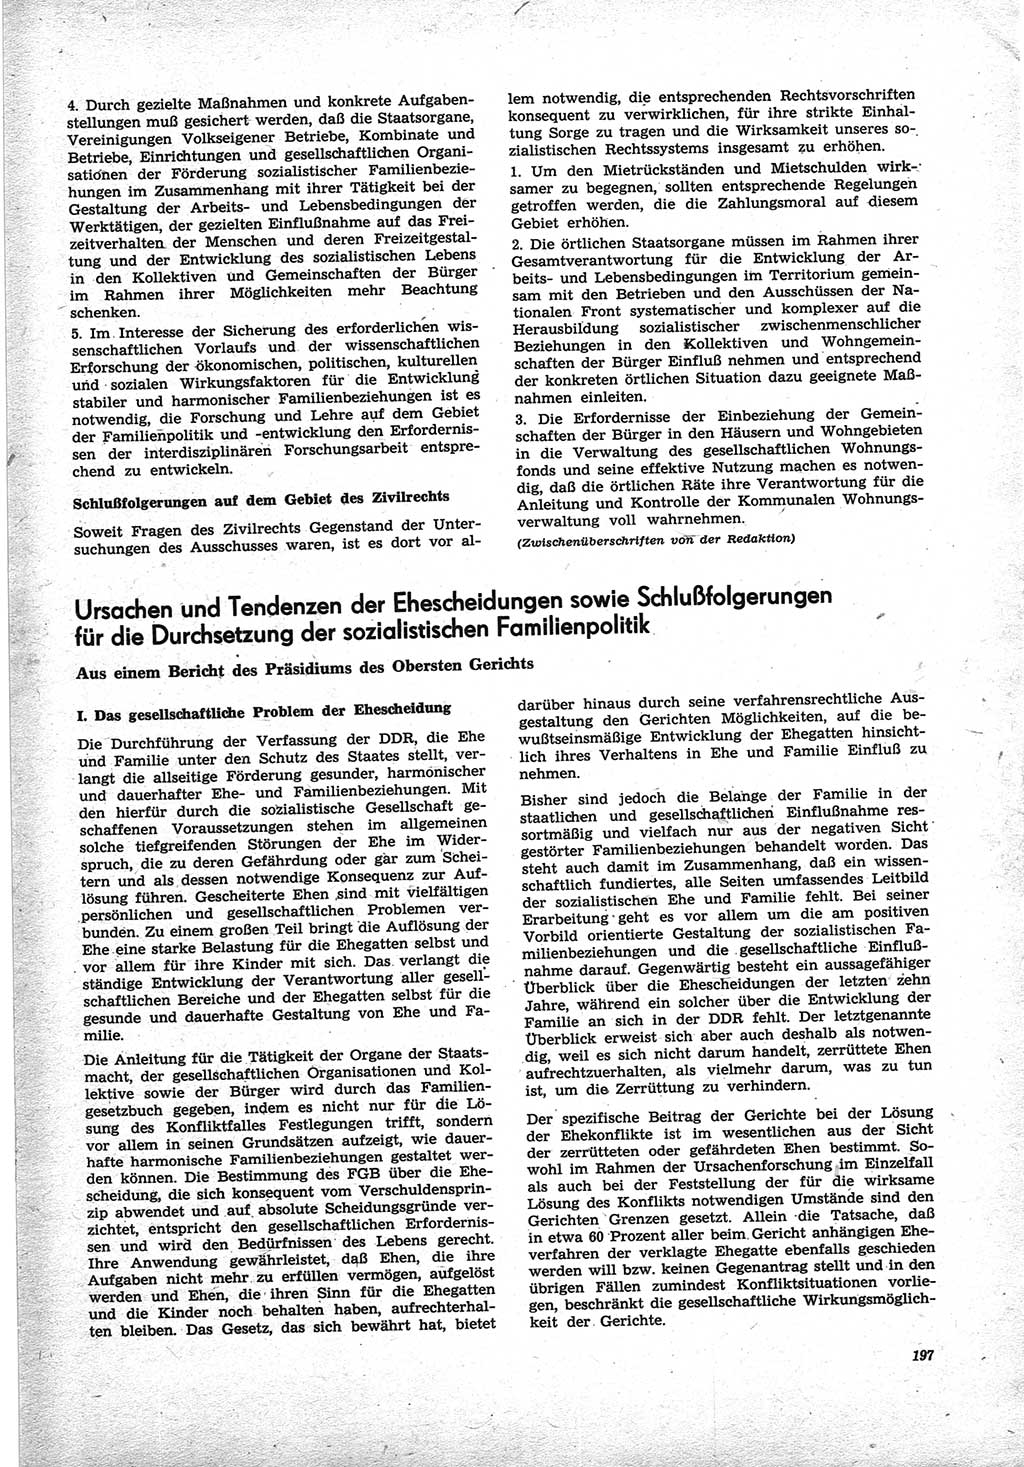 Neue Justiz (NJ), Zeitschrift für Recht und Rechtswissenschaft [Deutsche Demokratische Republik (DDR)], 25. Jahrgang 1971, Seite 197 (NJ DDR 1971, S. 197)